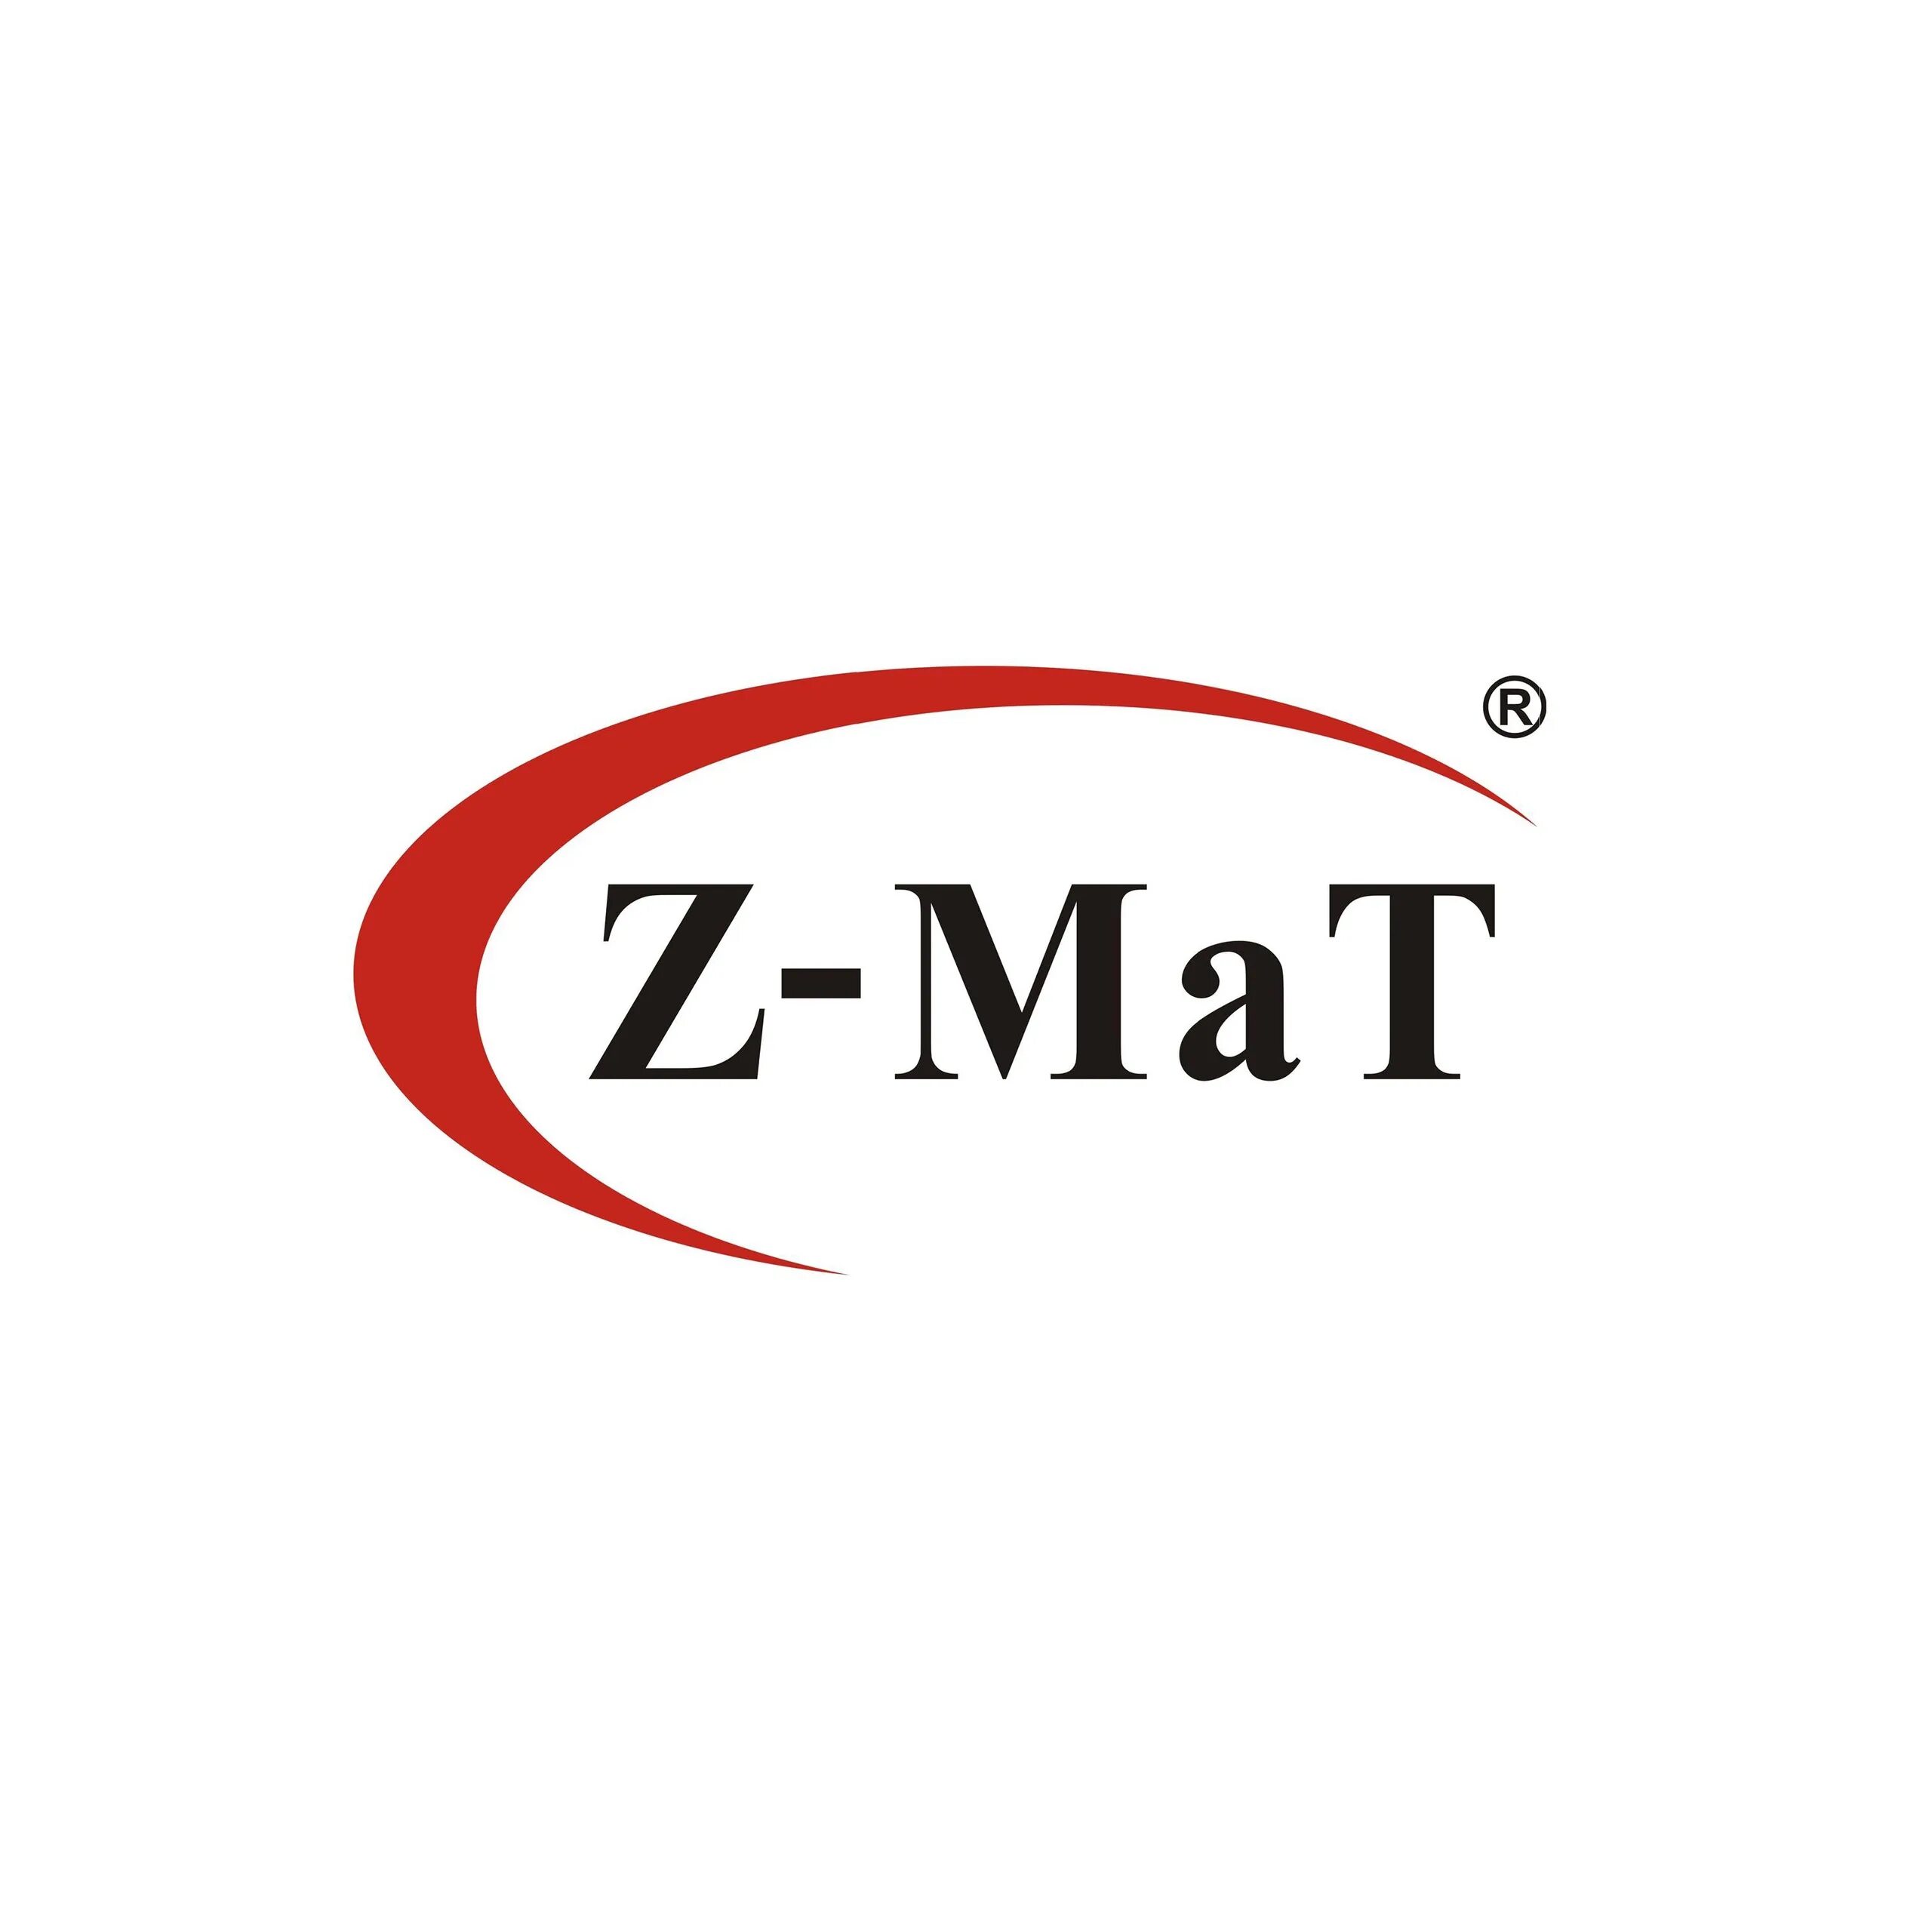 Z mat. Mat logo. Z-mat logo. Logo Matsa.